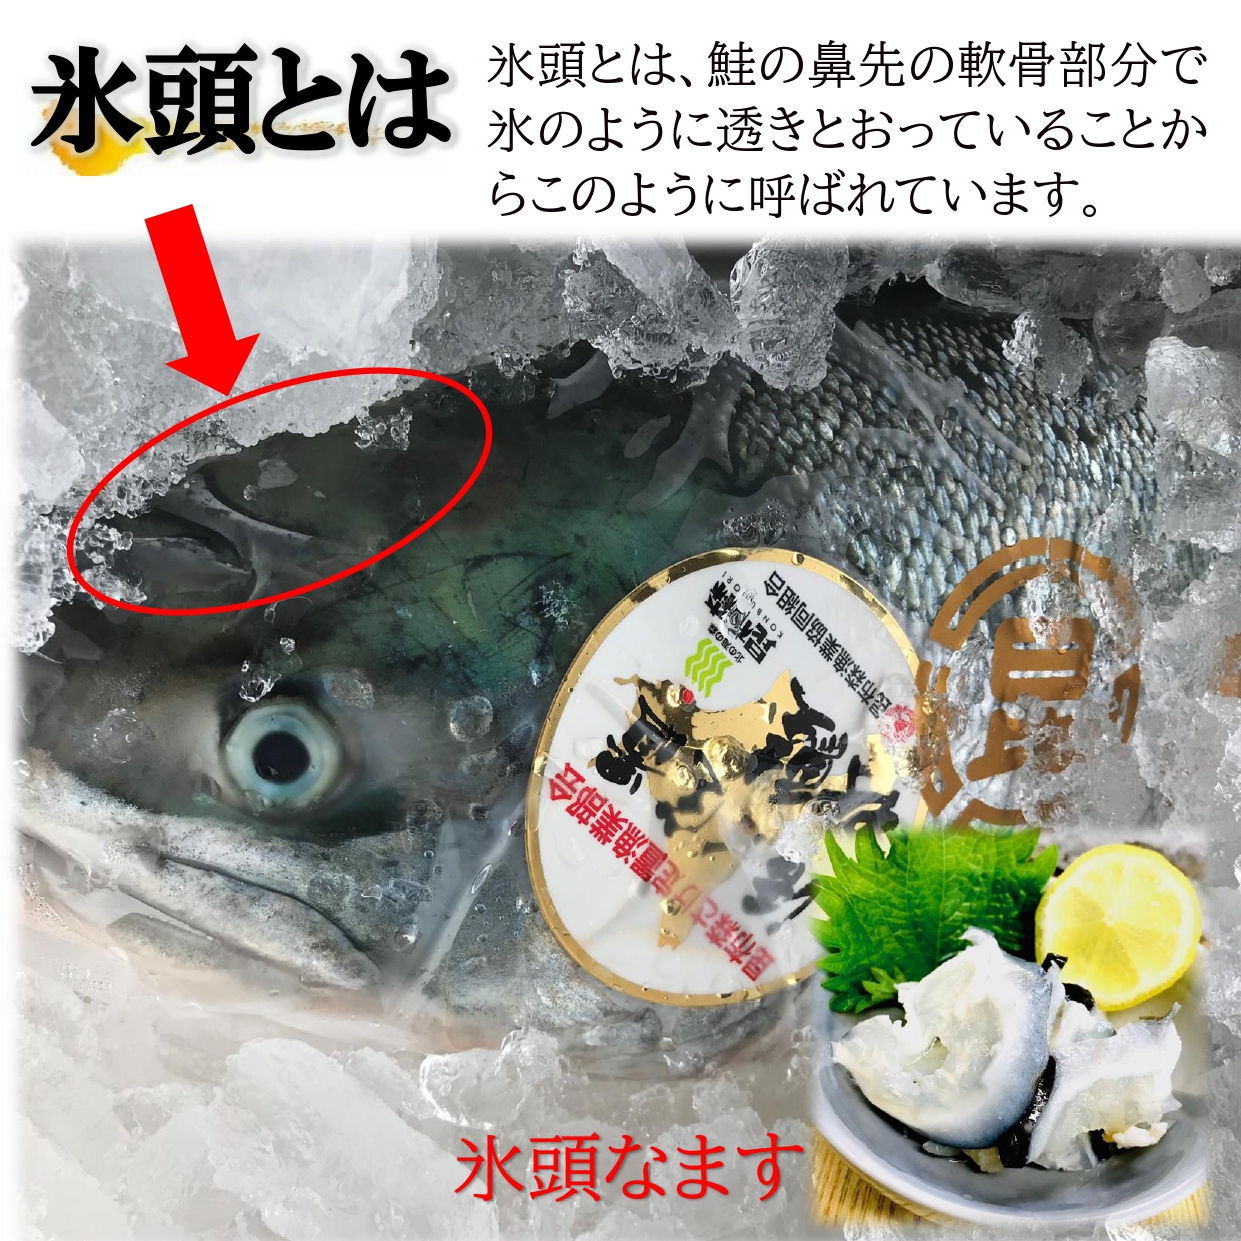 日本人気超絶の日本人気超絶の氷頭 なます 350g PC 国内水揚げの鮭を使用 年末年始にも重宝する稀少な珍味 氷頭なます ひず ヒズ 鮭 軟骨 珍味  国産 酢漬け 鮭、サーモン